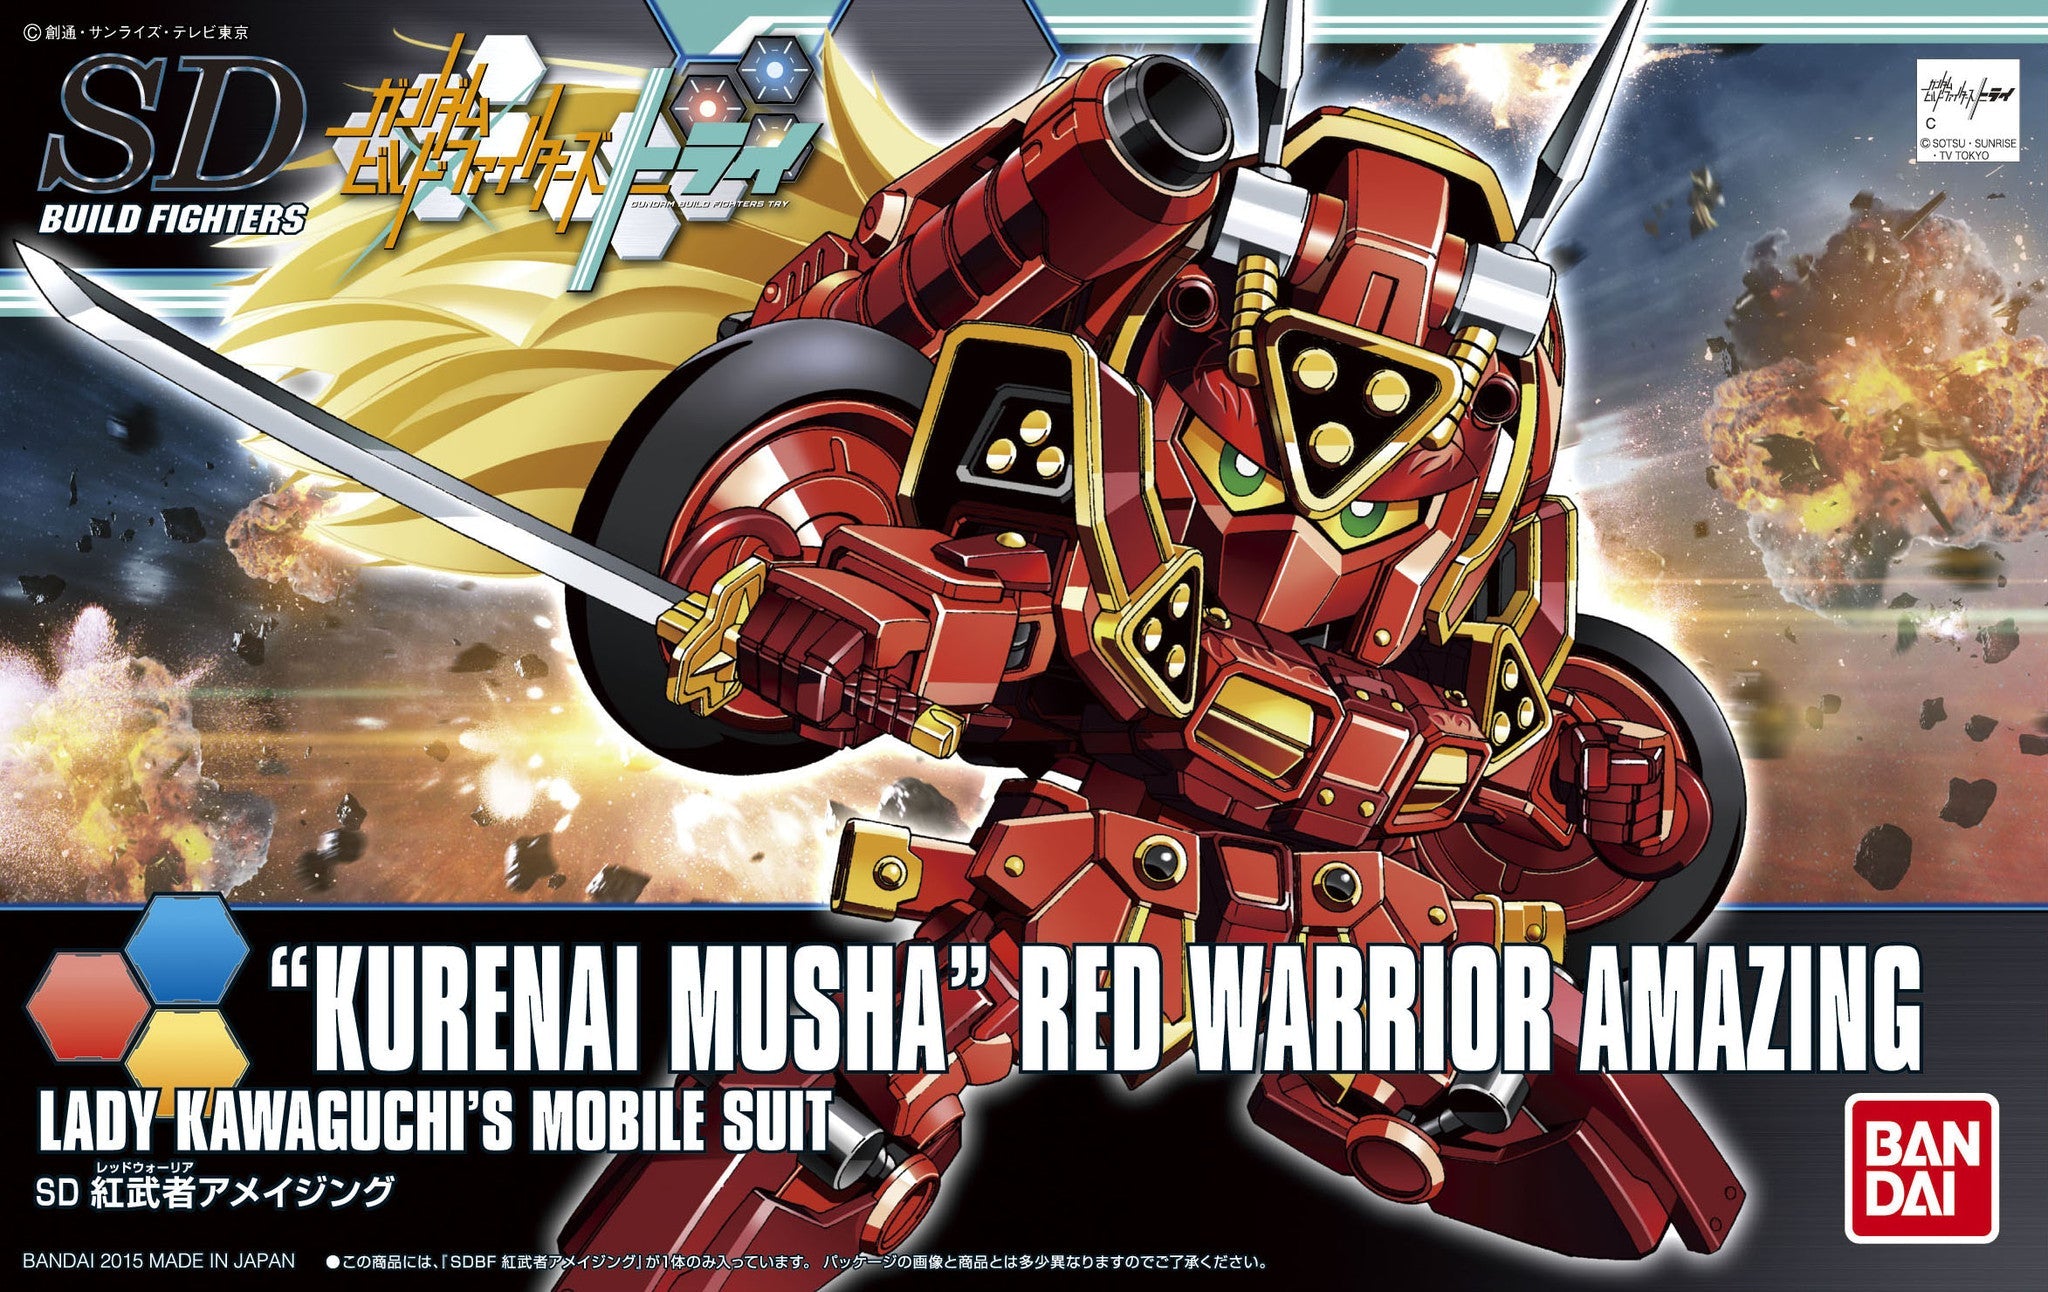 HGBF#041 Kurenai Musha Red Warrior Amazing